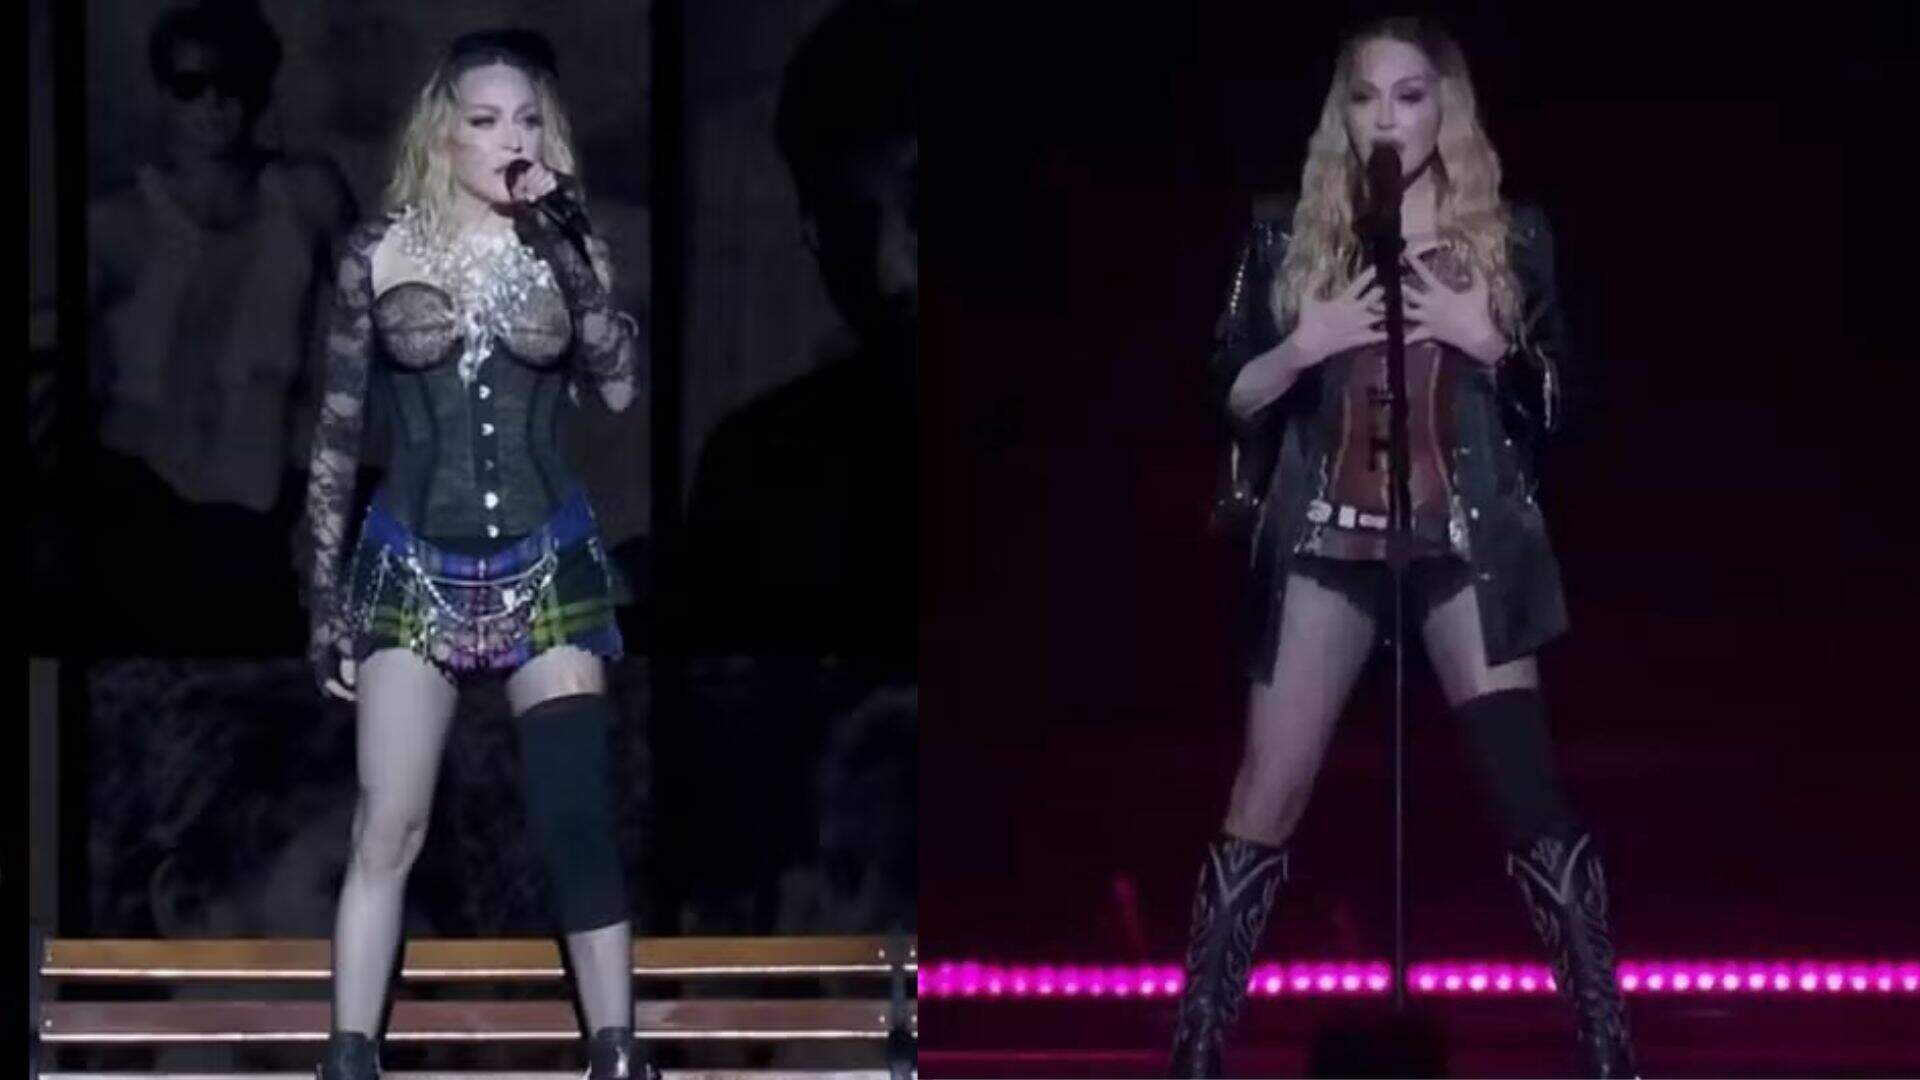 Saiba por que Madonna usou joelheira durante o lendário show no Rio de Janeiro